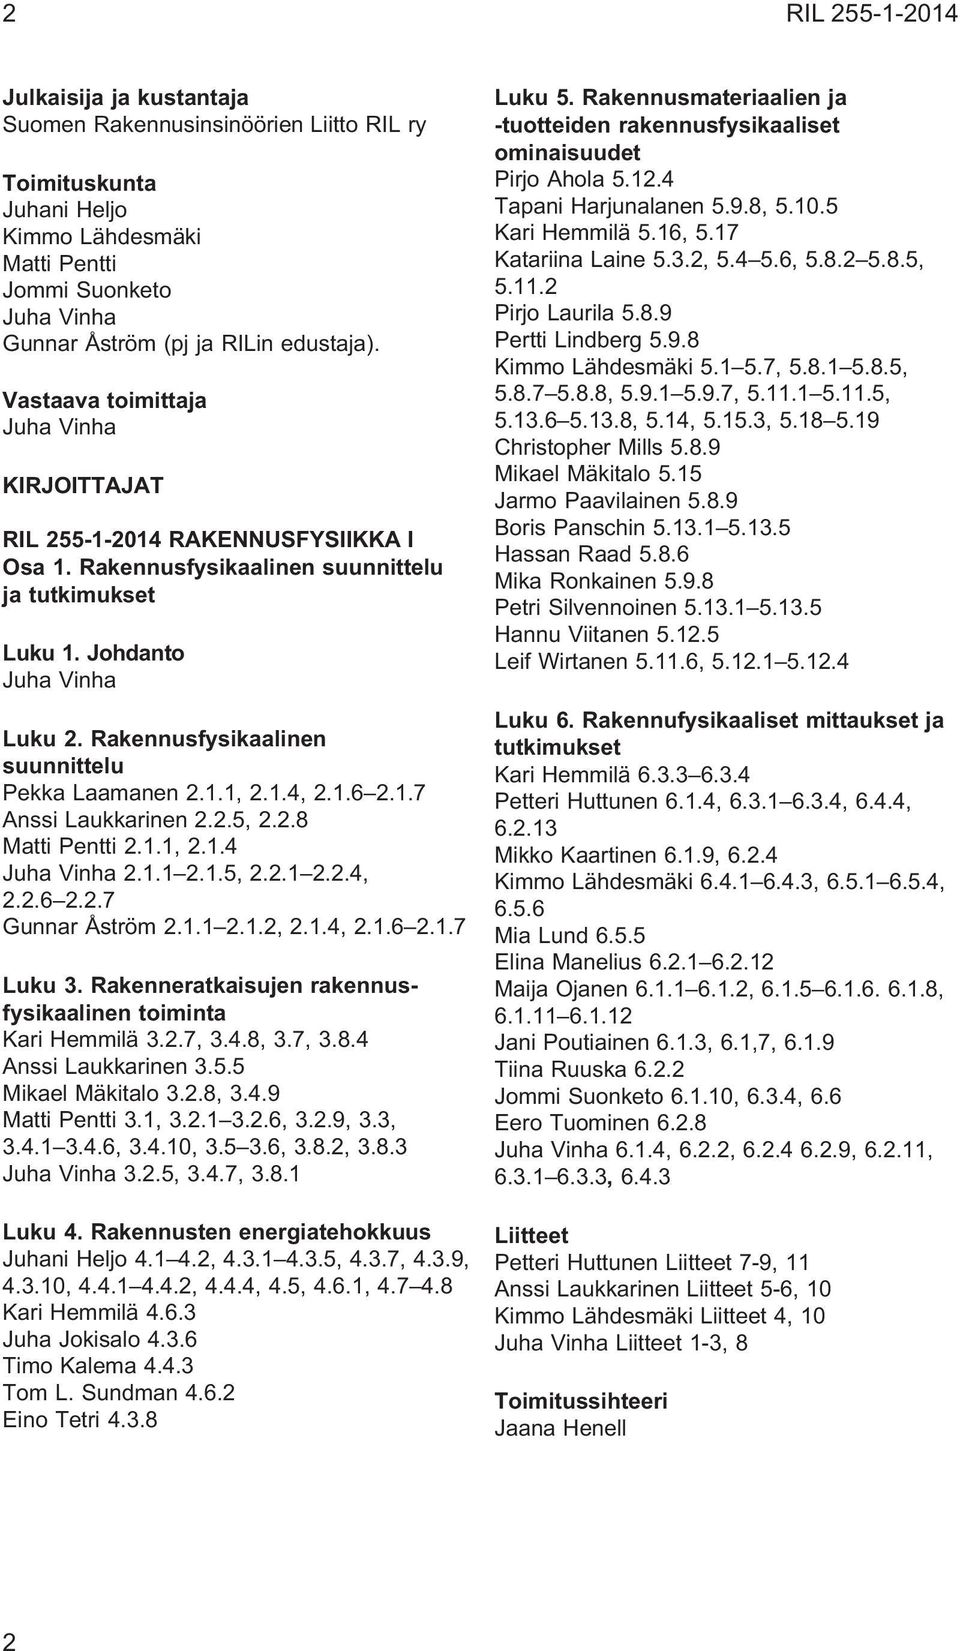 Rakennusfysikaalinen suunnittelu Pekka Laamanen 2.1.1, 2.1.4, 2.1.6 2.1.7 Anssi Laukkarinen 2.2.5, 2.2.8 Matti Pentti 2.1.1, 2.1.4 Juha Vinha 2.1.1 2.1.5, 2.2.1 2.2.4, 2.2.6 2.2.7 Gunnar Åström 2.1.1 2.1.2, 2.